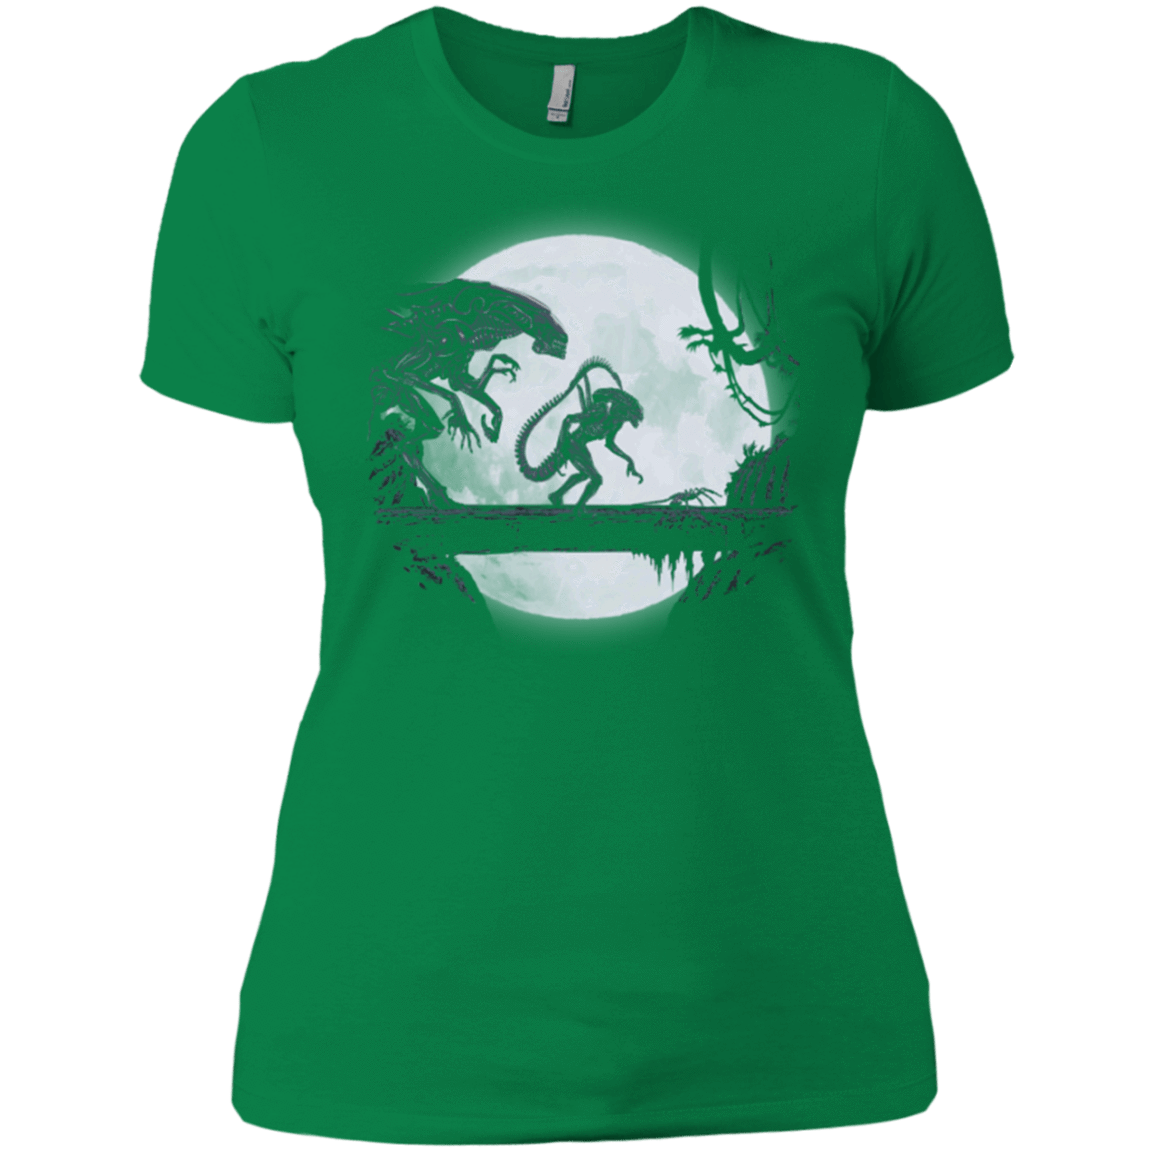 T-Shirts Kelly Green / X-Small Alien Matata Women's Premium T-Shirt